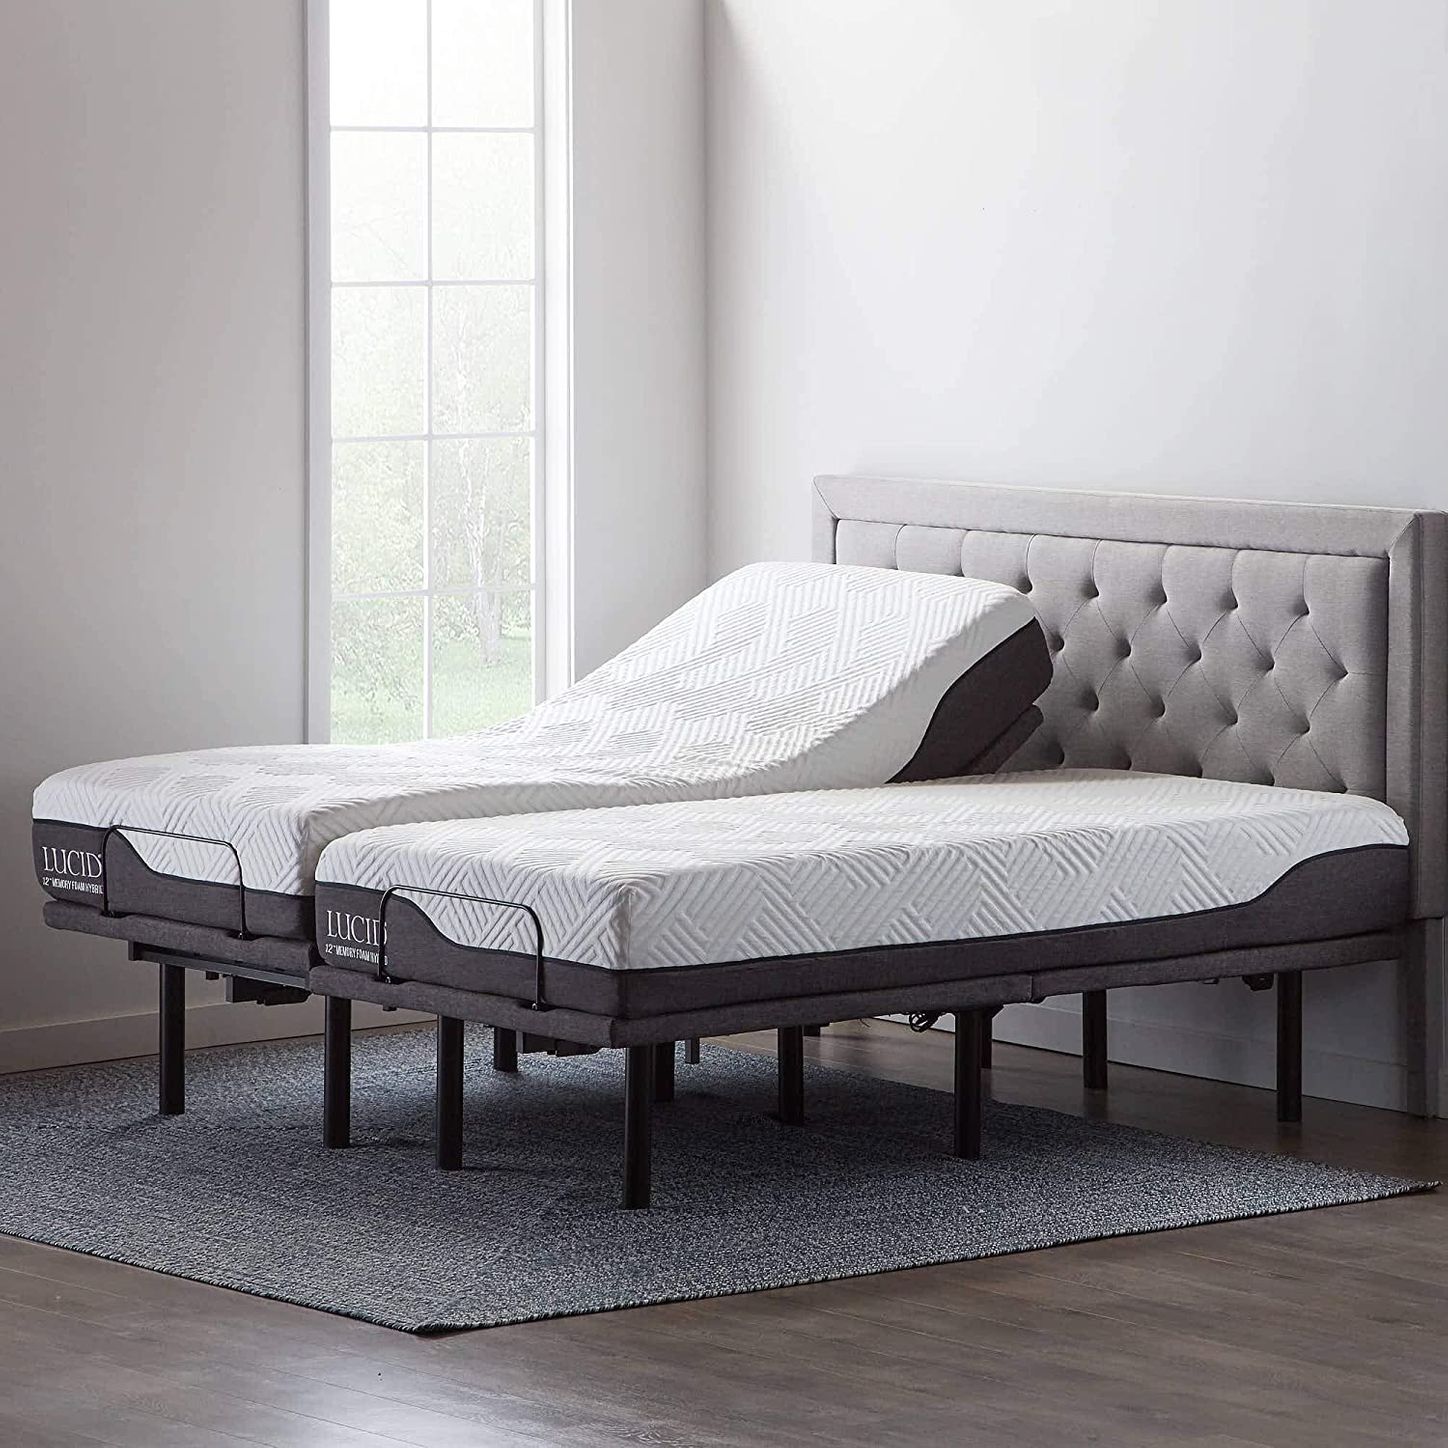 10 Best Adjustable Bed Bases 2021 The, Split King Adjustable Bed Reviews